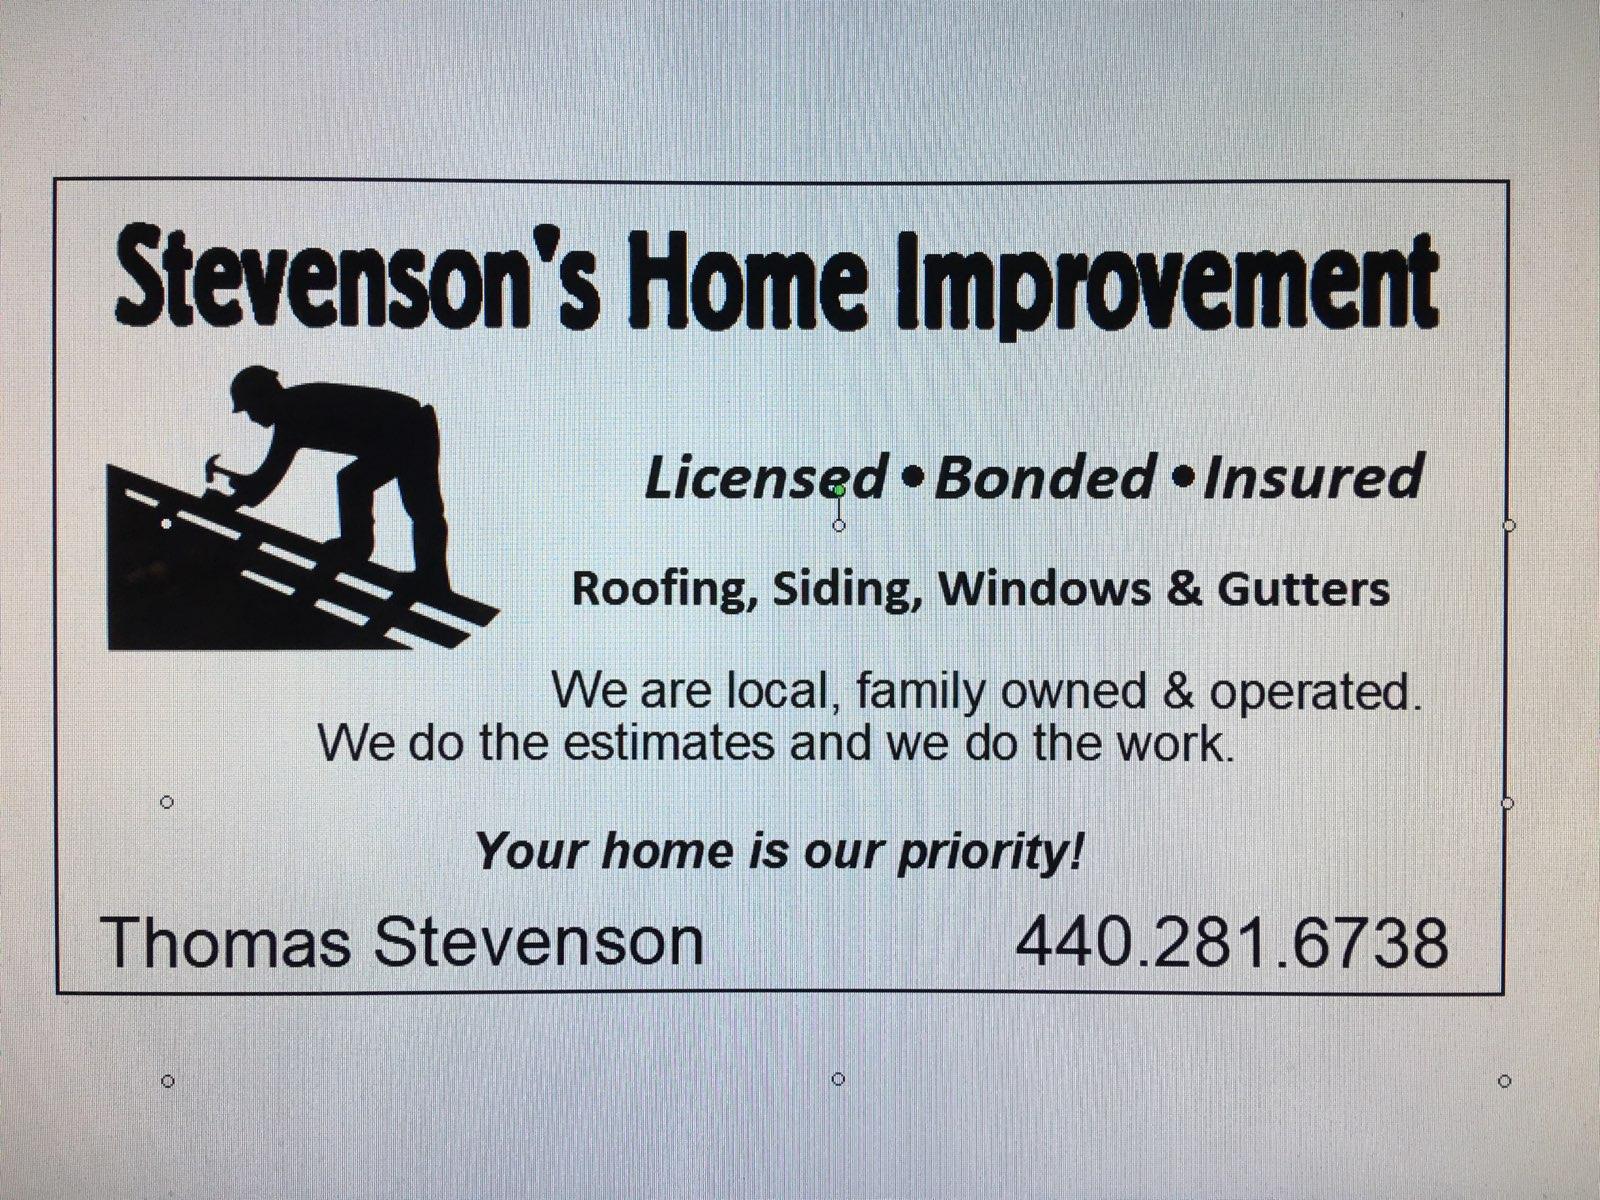 The Stevensons' Home Improvement Logo